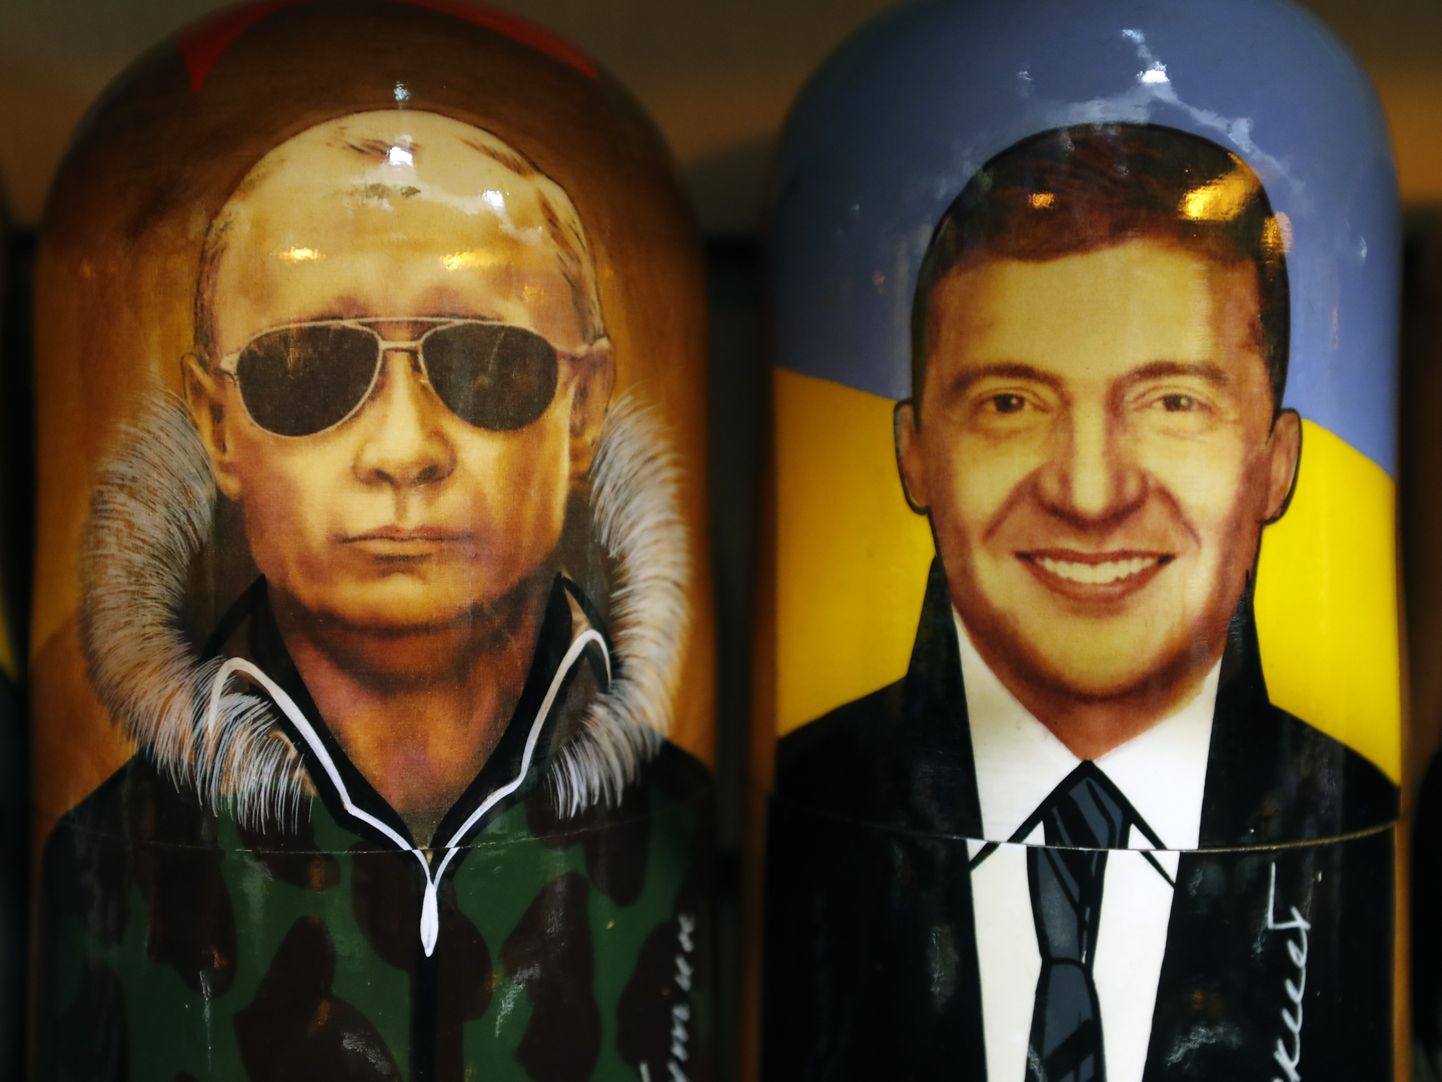 Матрешки с изображением президента России Владимира Путина и президента Украины Владимира Зеленского еще стоят рядом в сувенирной лавке в Санкт-Петербурге, декабрь 2019 года.